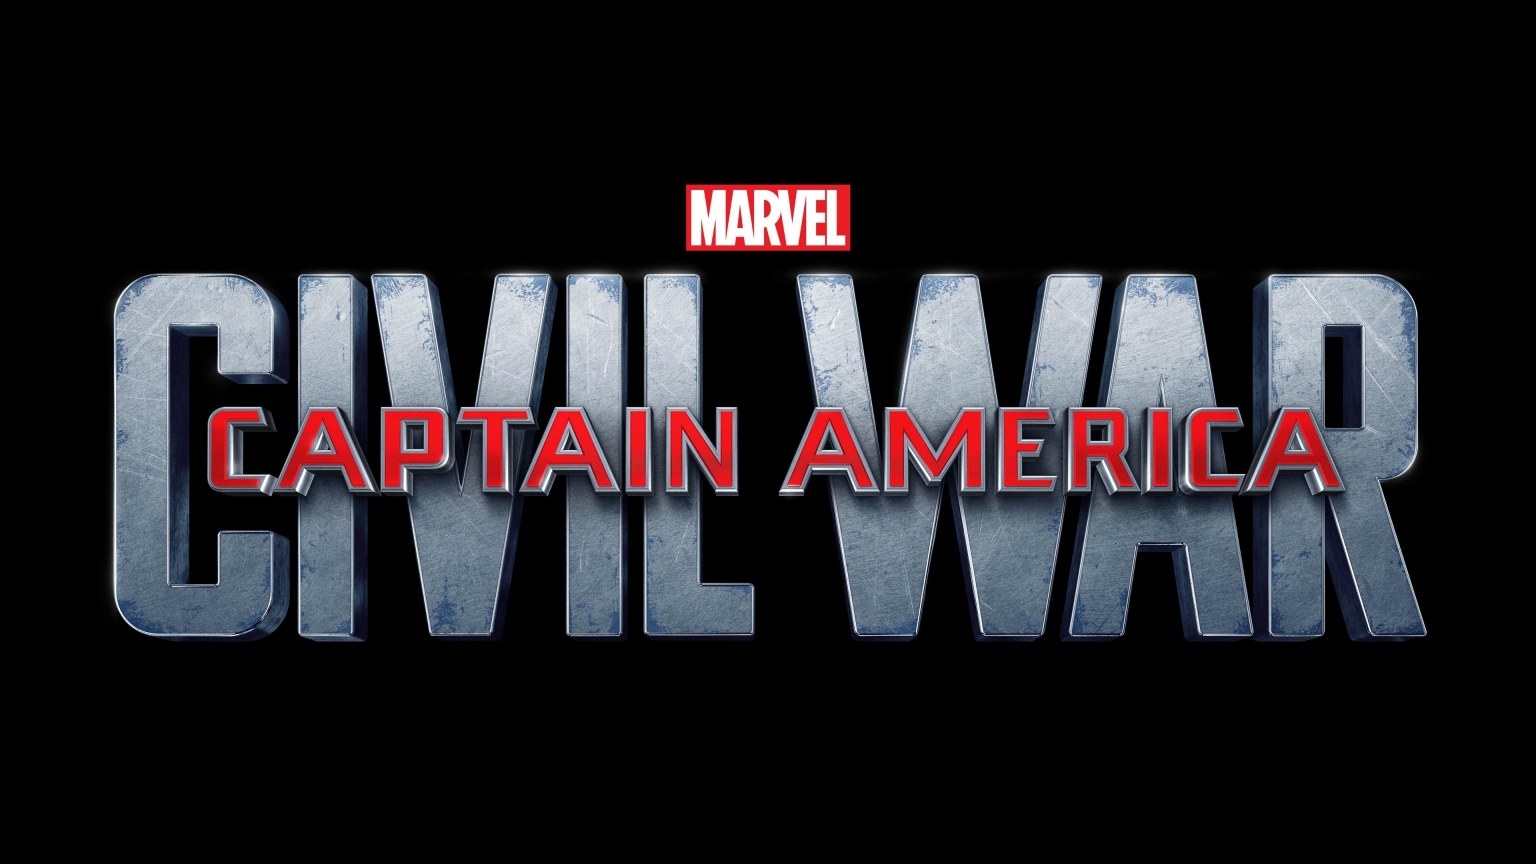 Captain America Civil War Logo for 1536 x 864 HDTV resolution